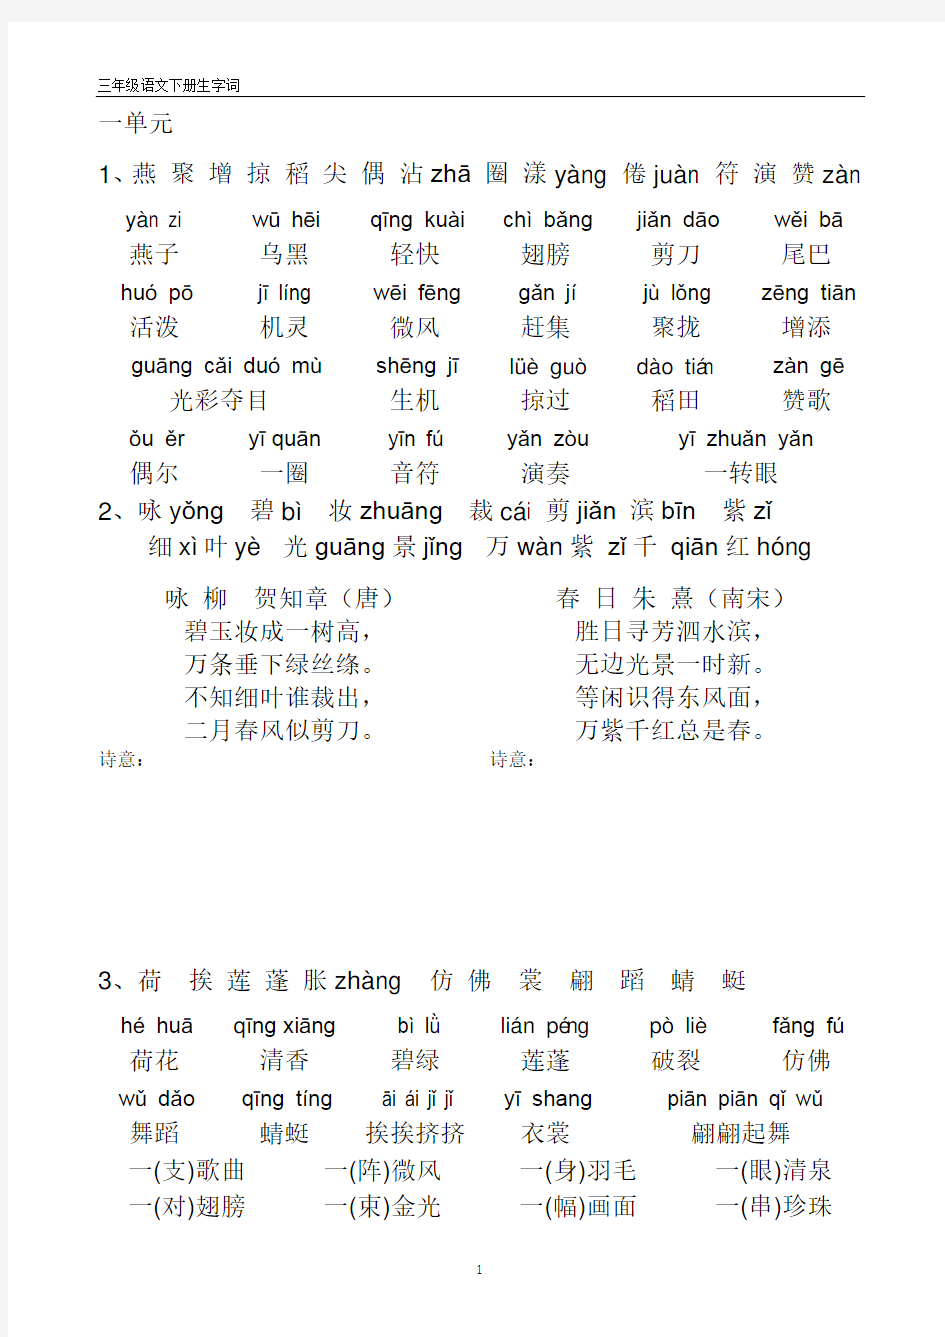 人教版三年级语文下册带拼音生字表、词语表